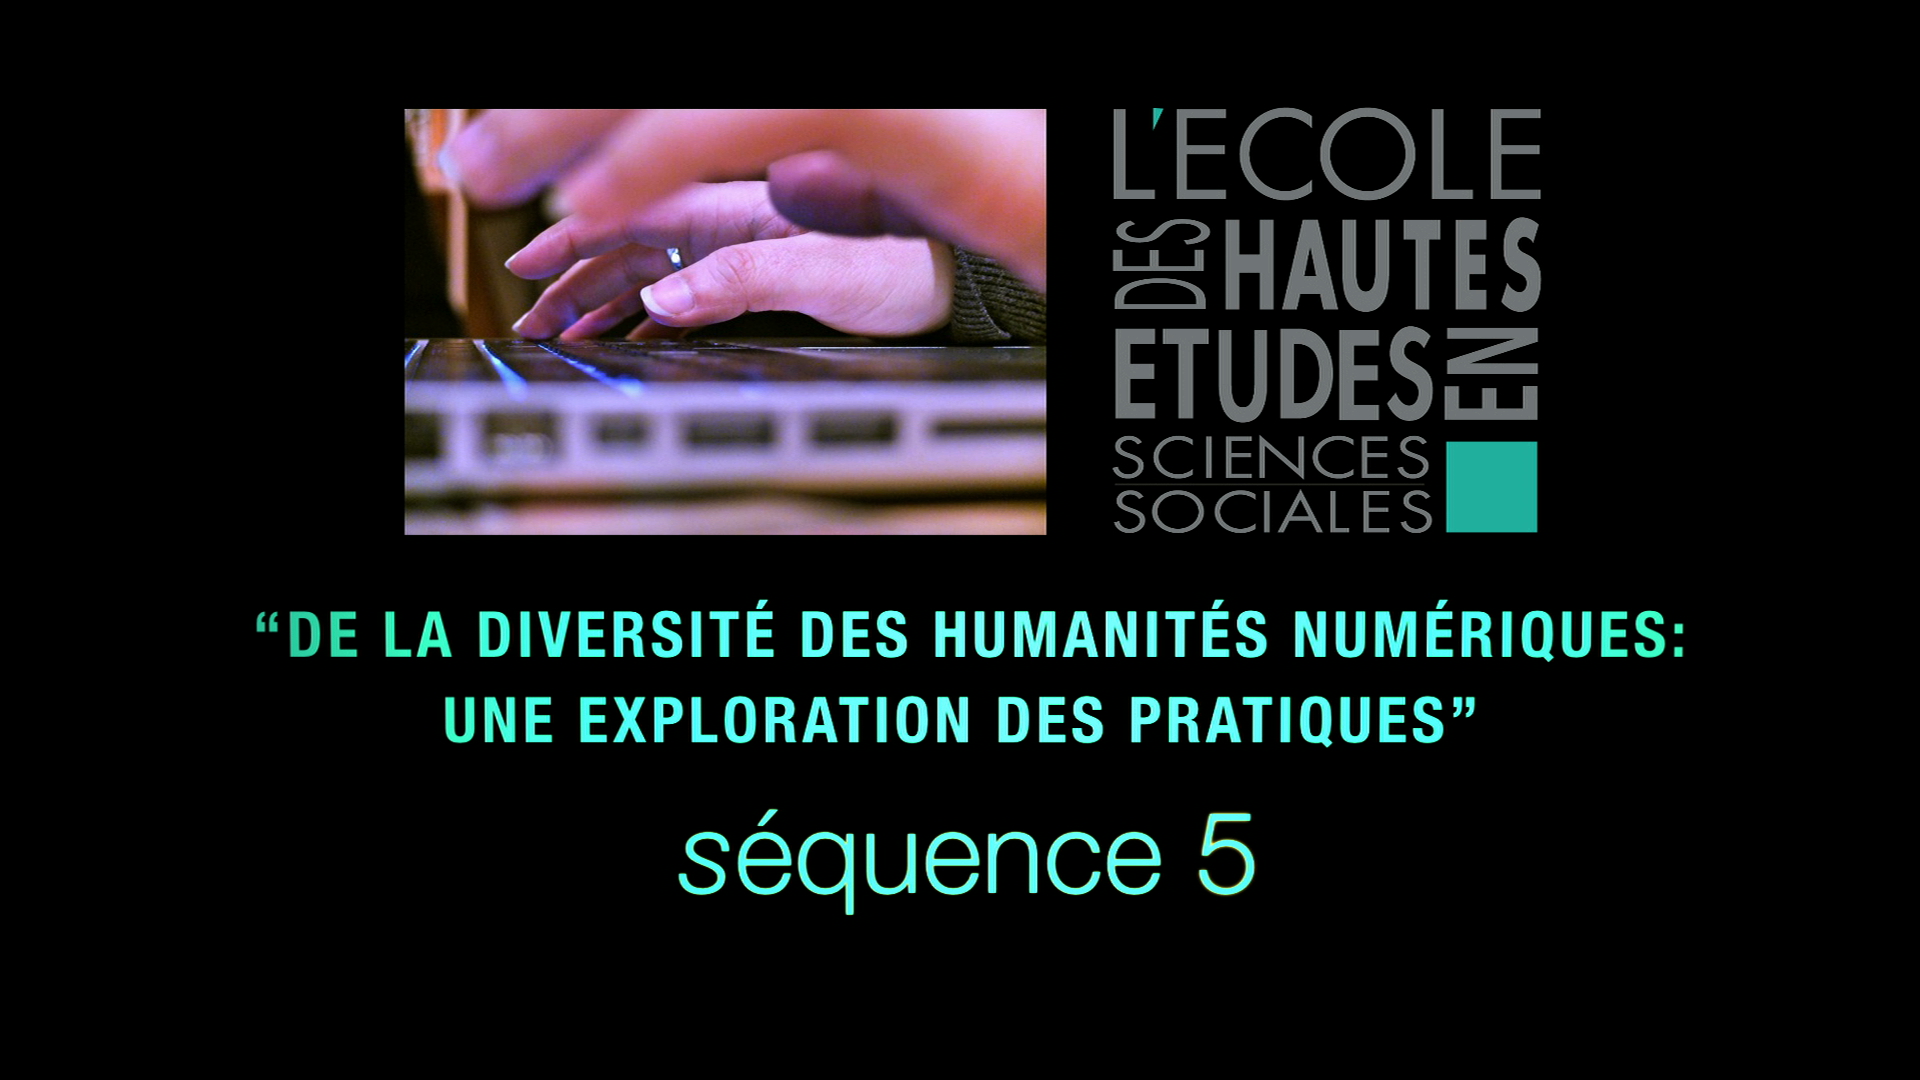 5 - De la diversité des humanités numériques: 
une exploration des pratiques